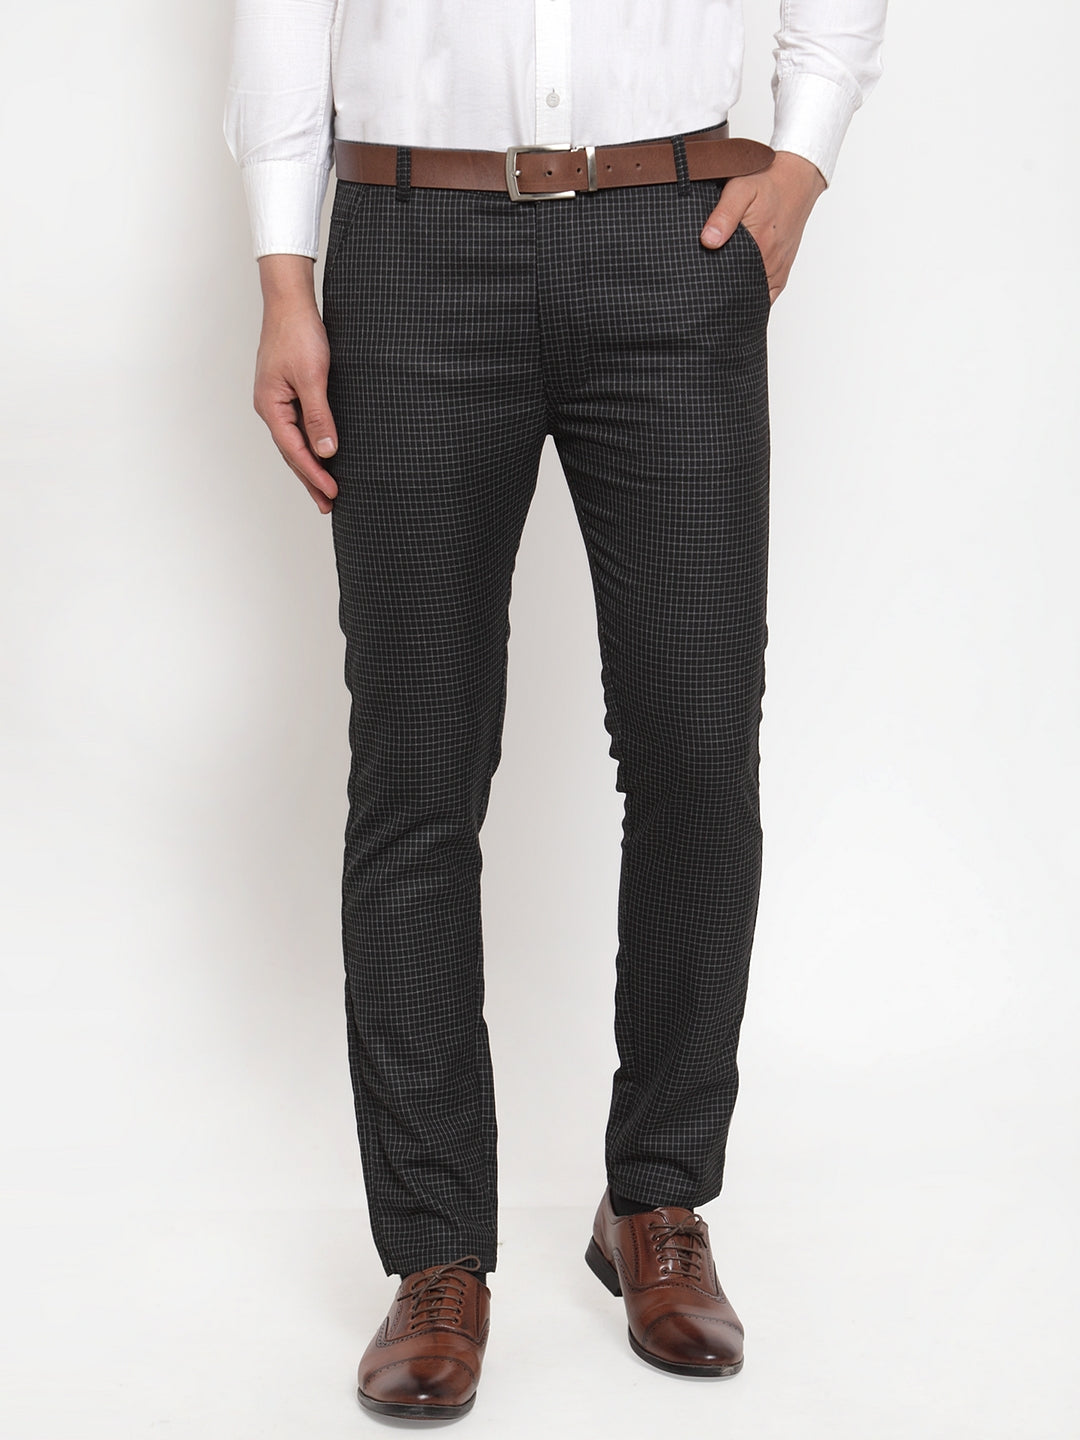 Unique Bargains Men's Slim Fit Plaid Business Pants Trousers with Pockets -  Walmart.com